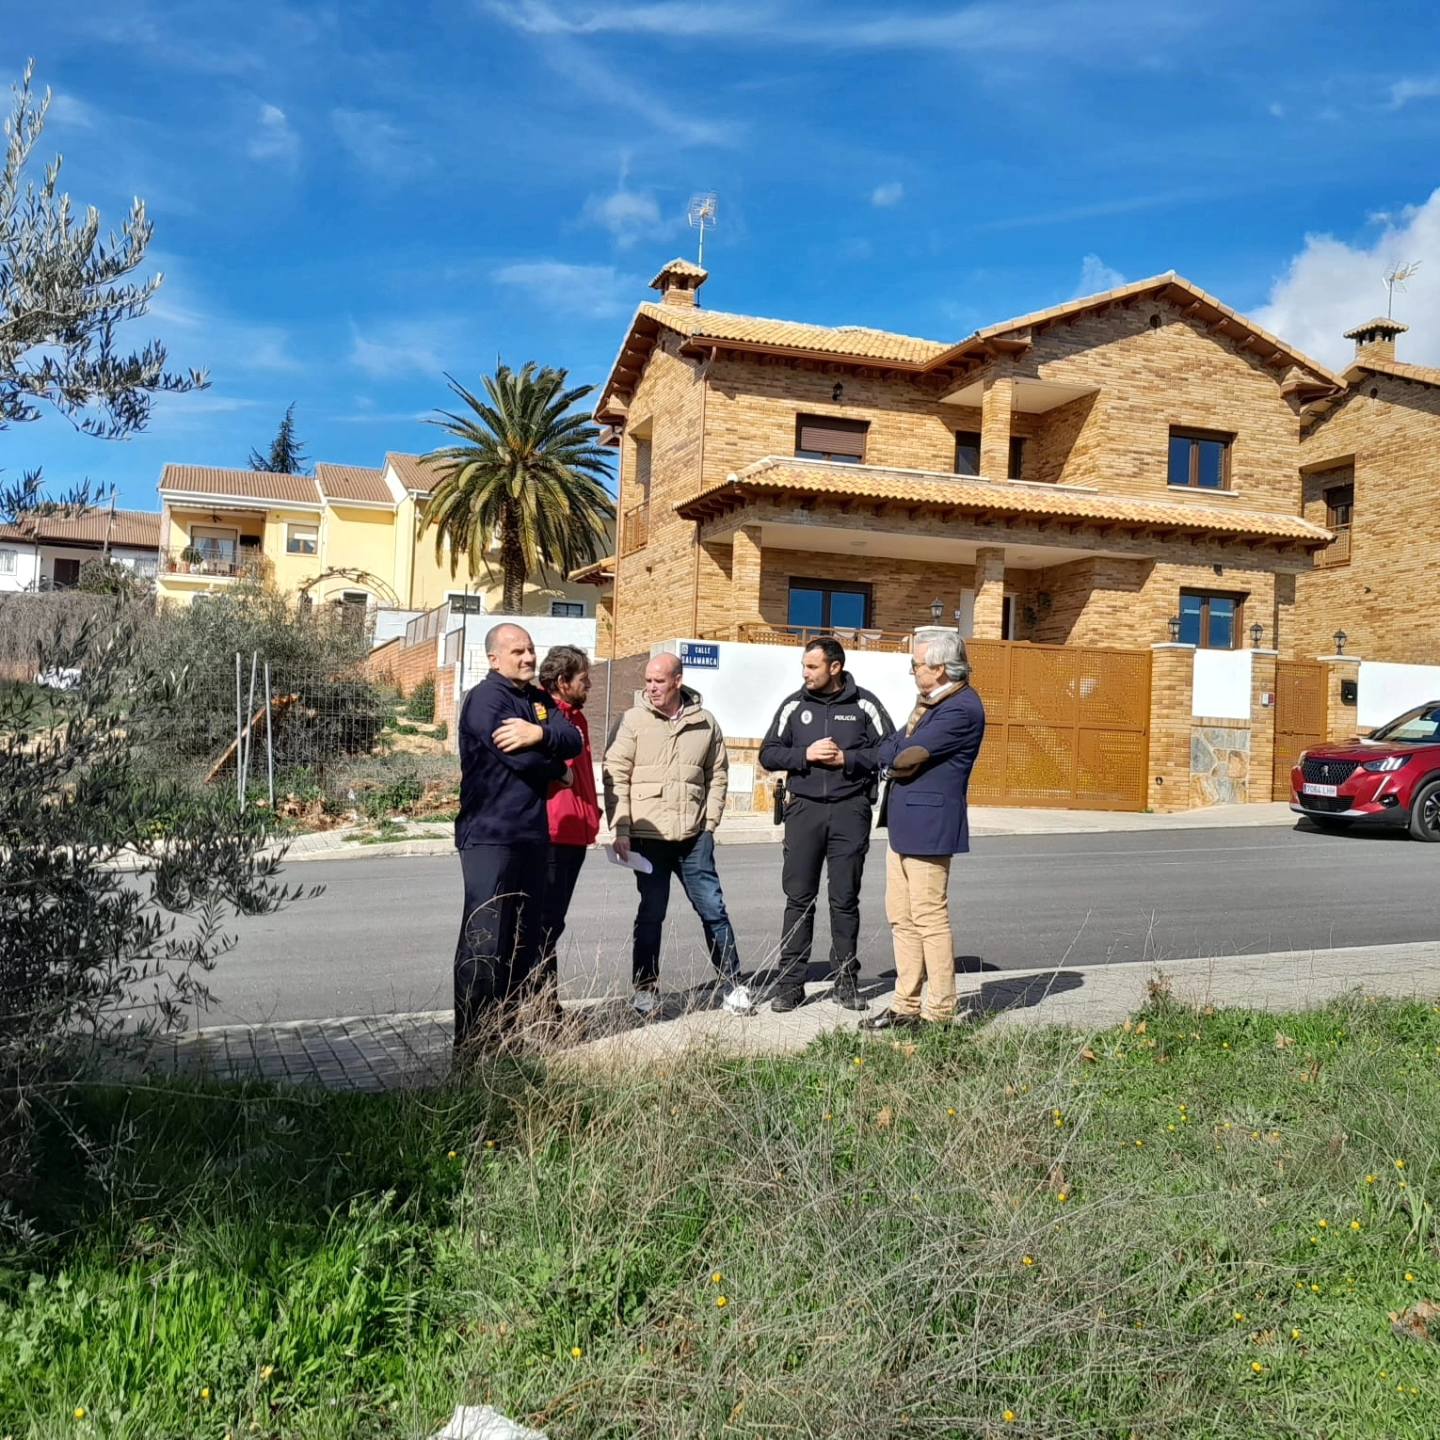 El concejal de Seguridad junto con representantes de la Comunidad de Madrid, visitan una de posibles ubicaciones de la nueva sede.